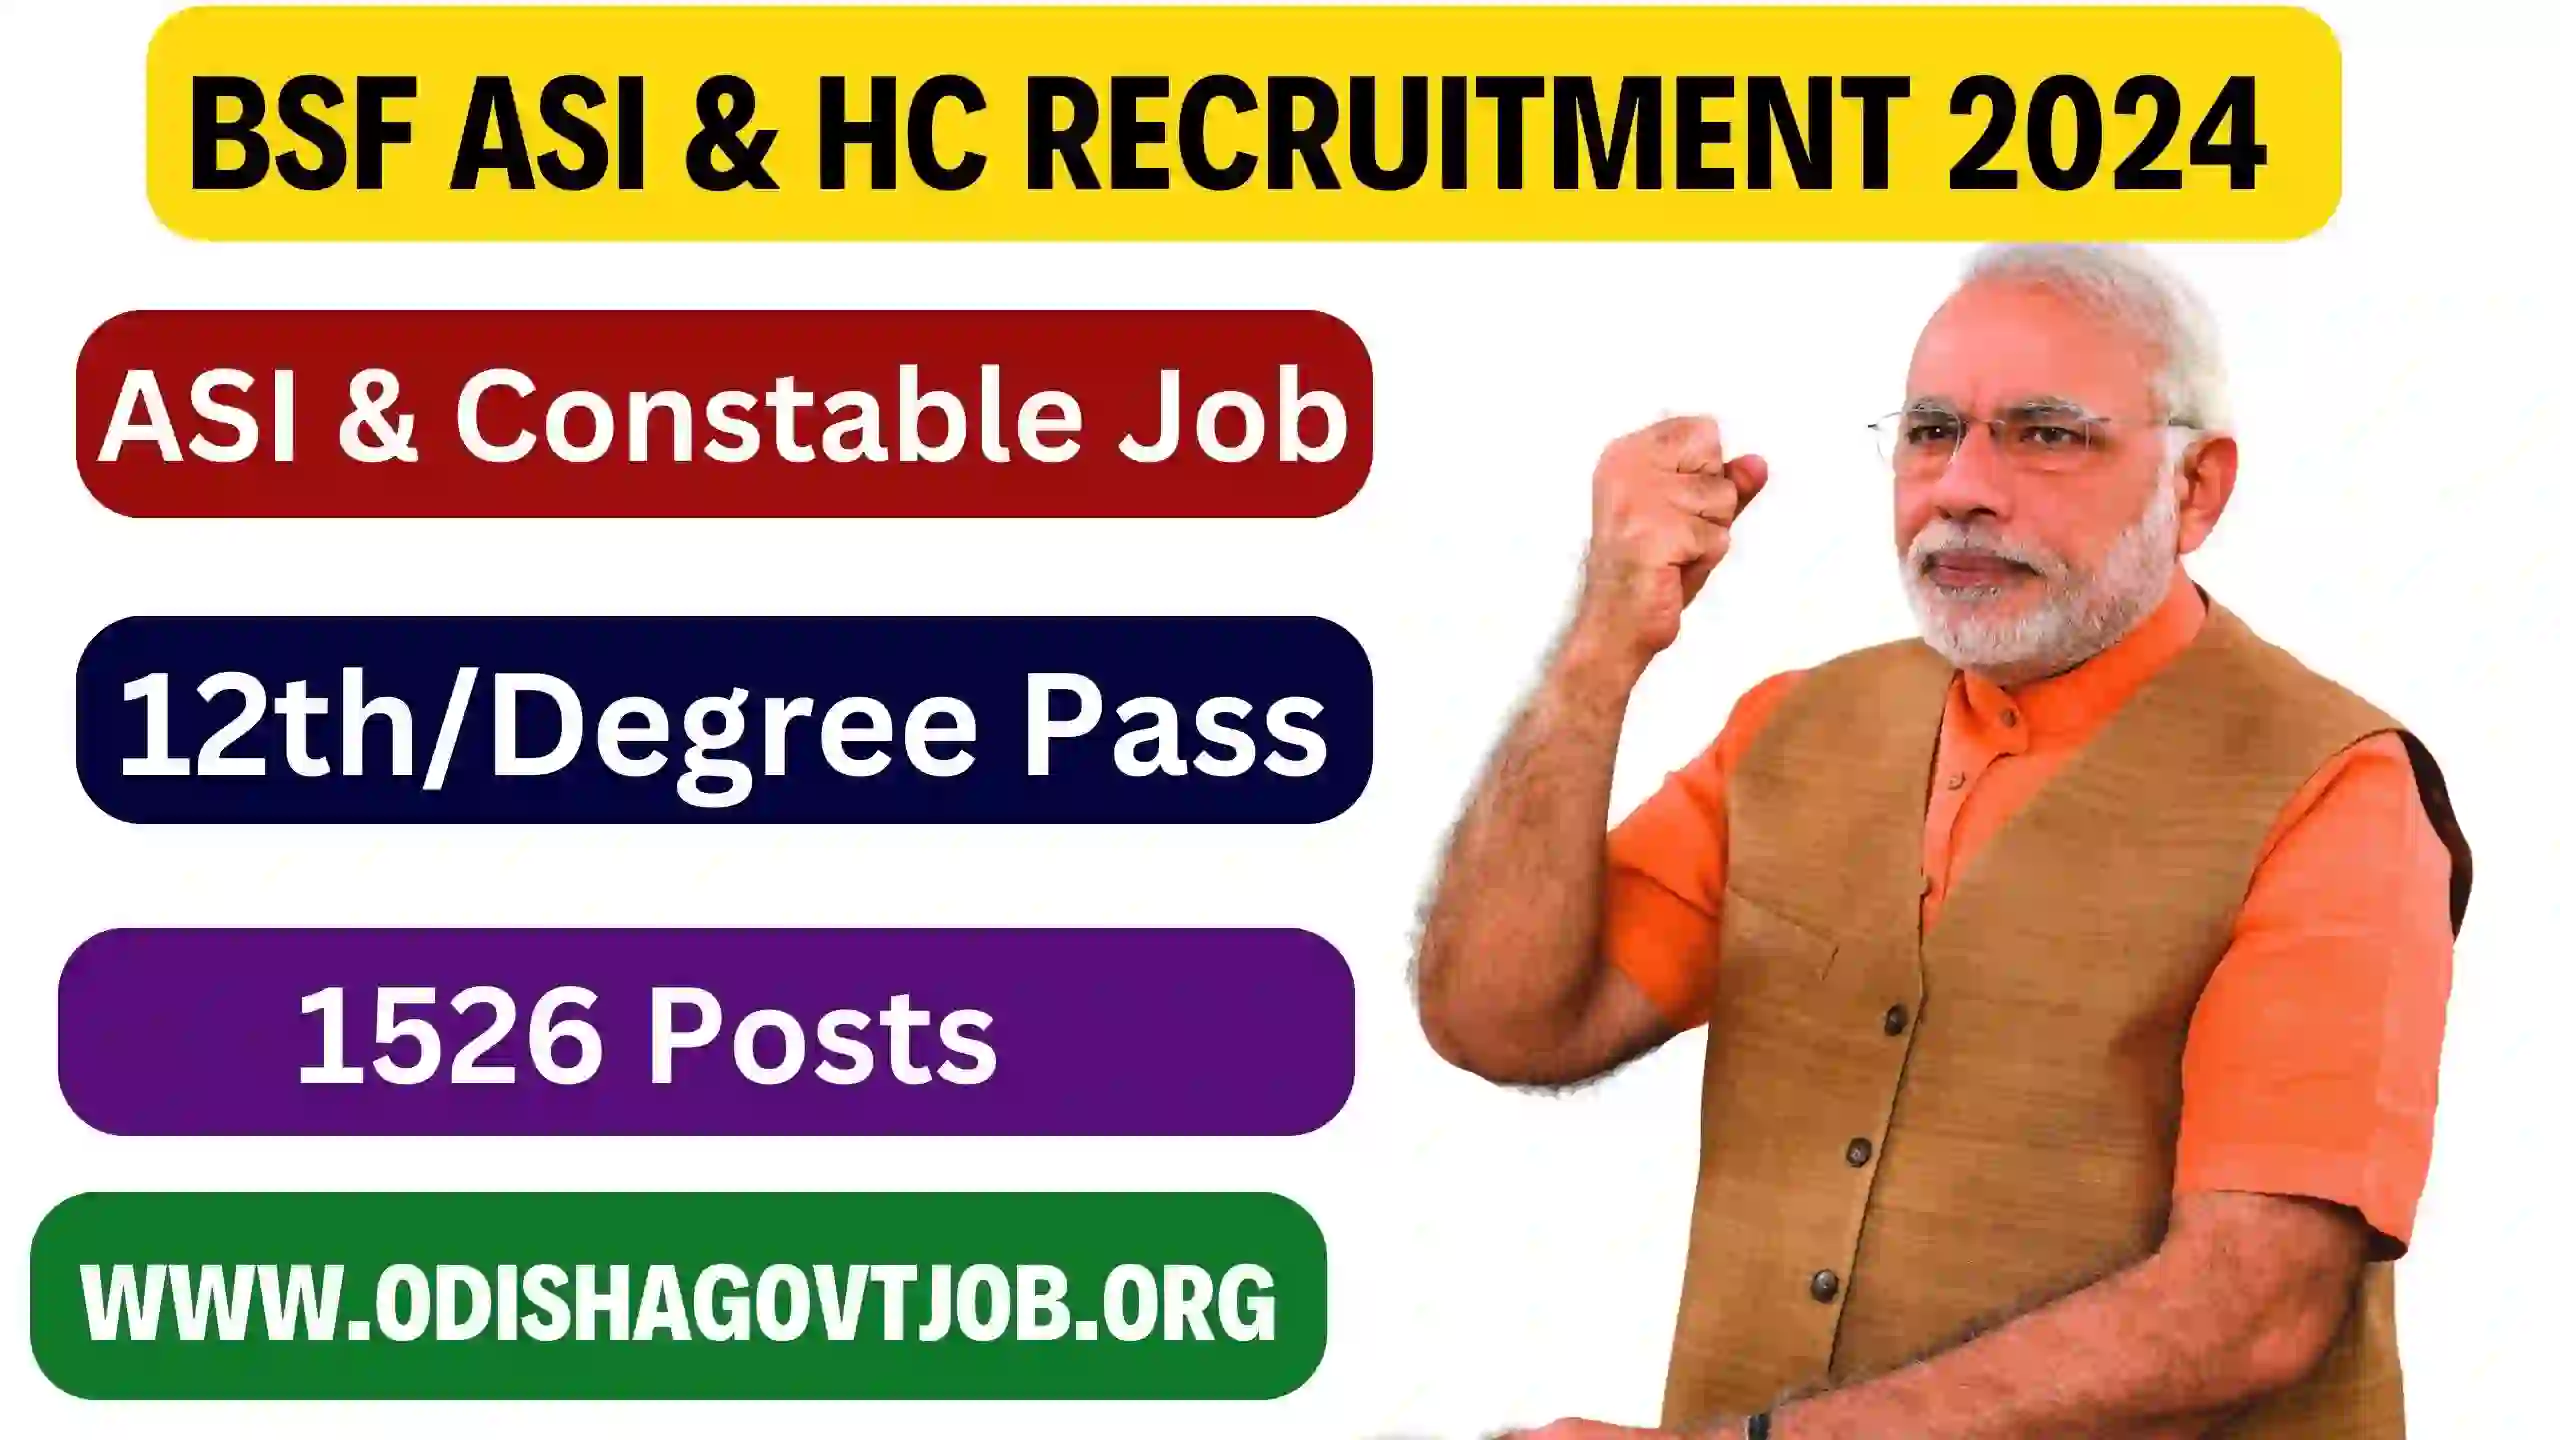 BSF ASI & HC Recruitment 2024